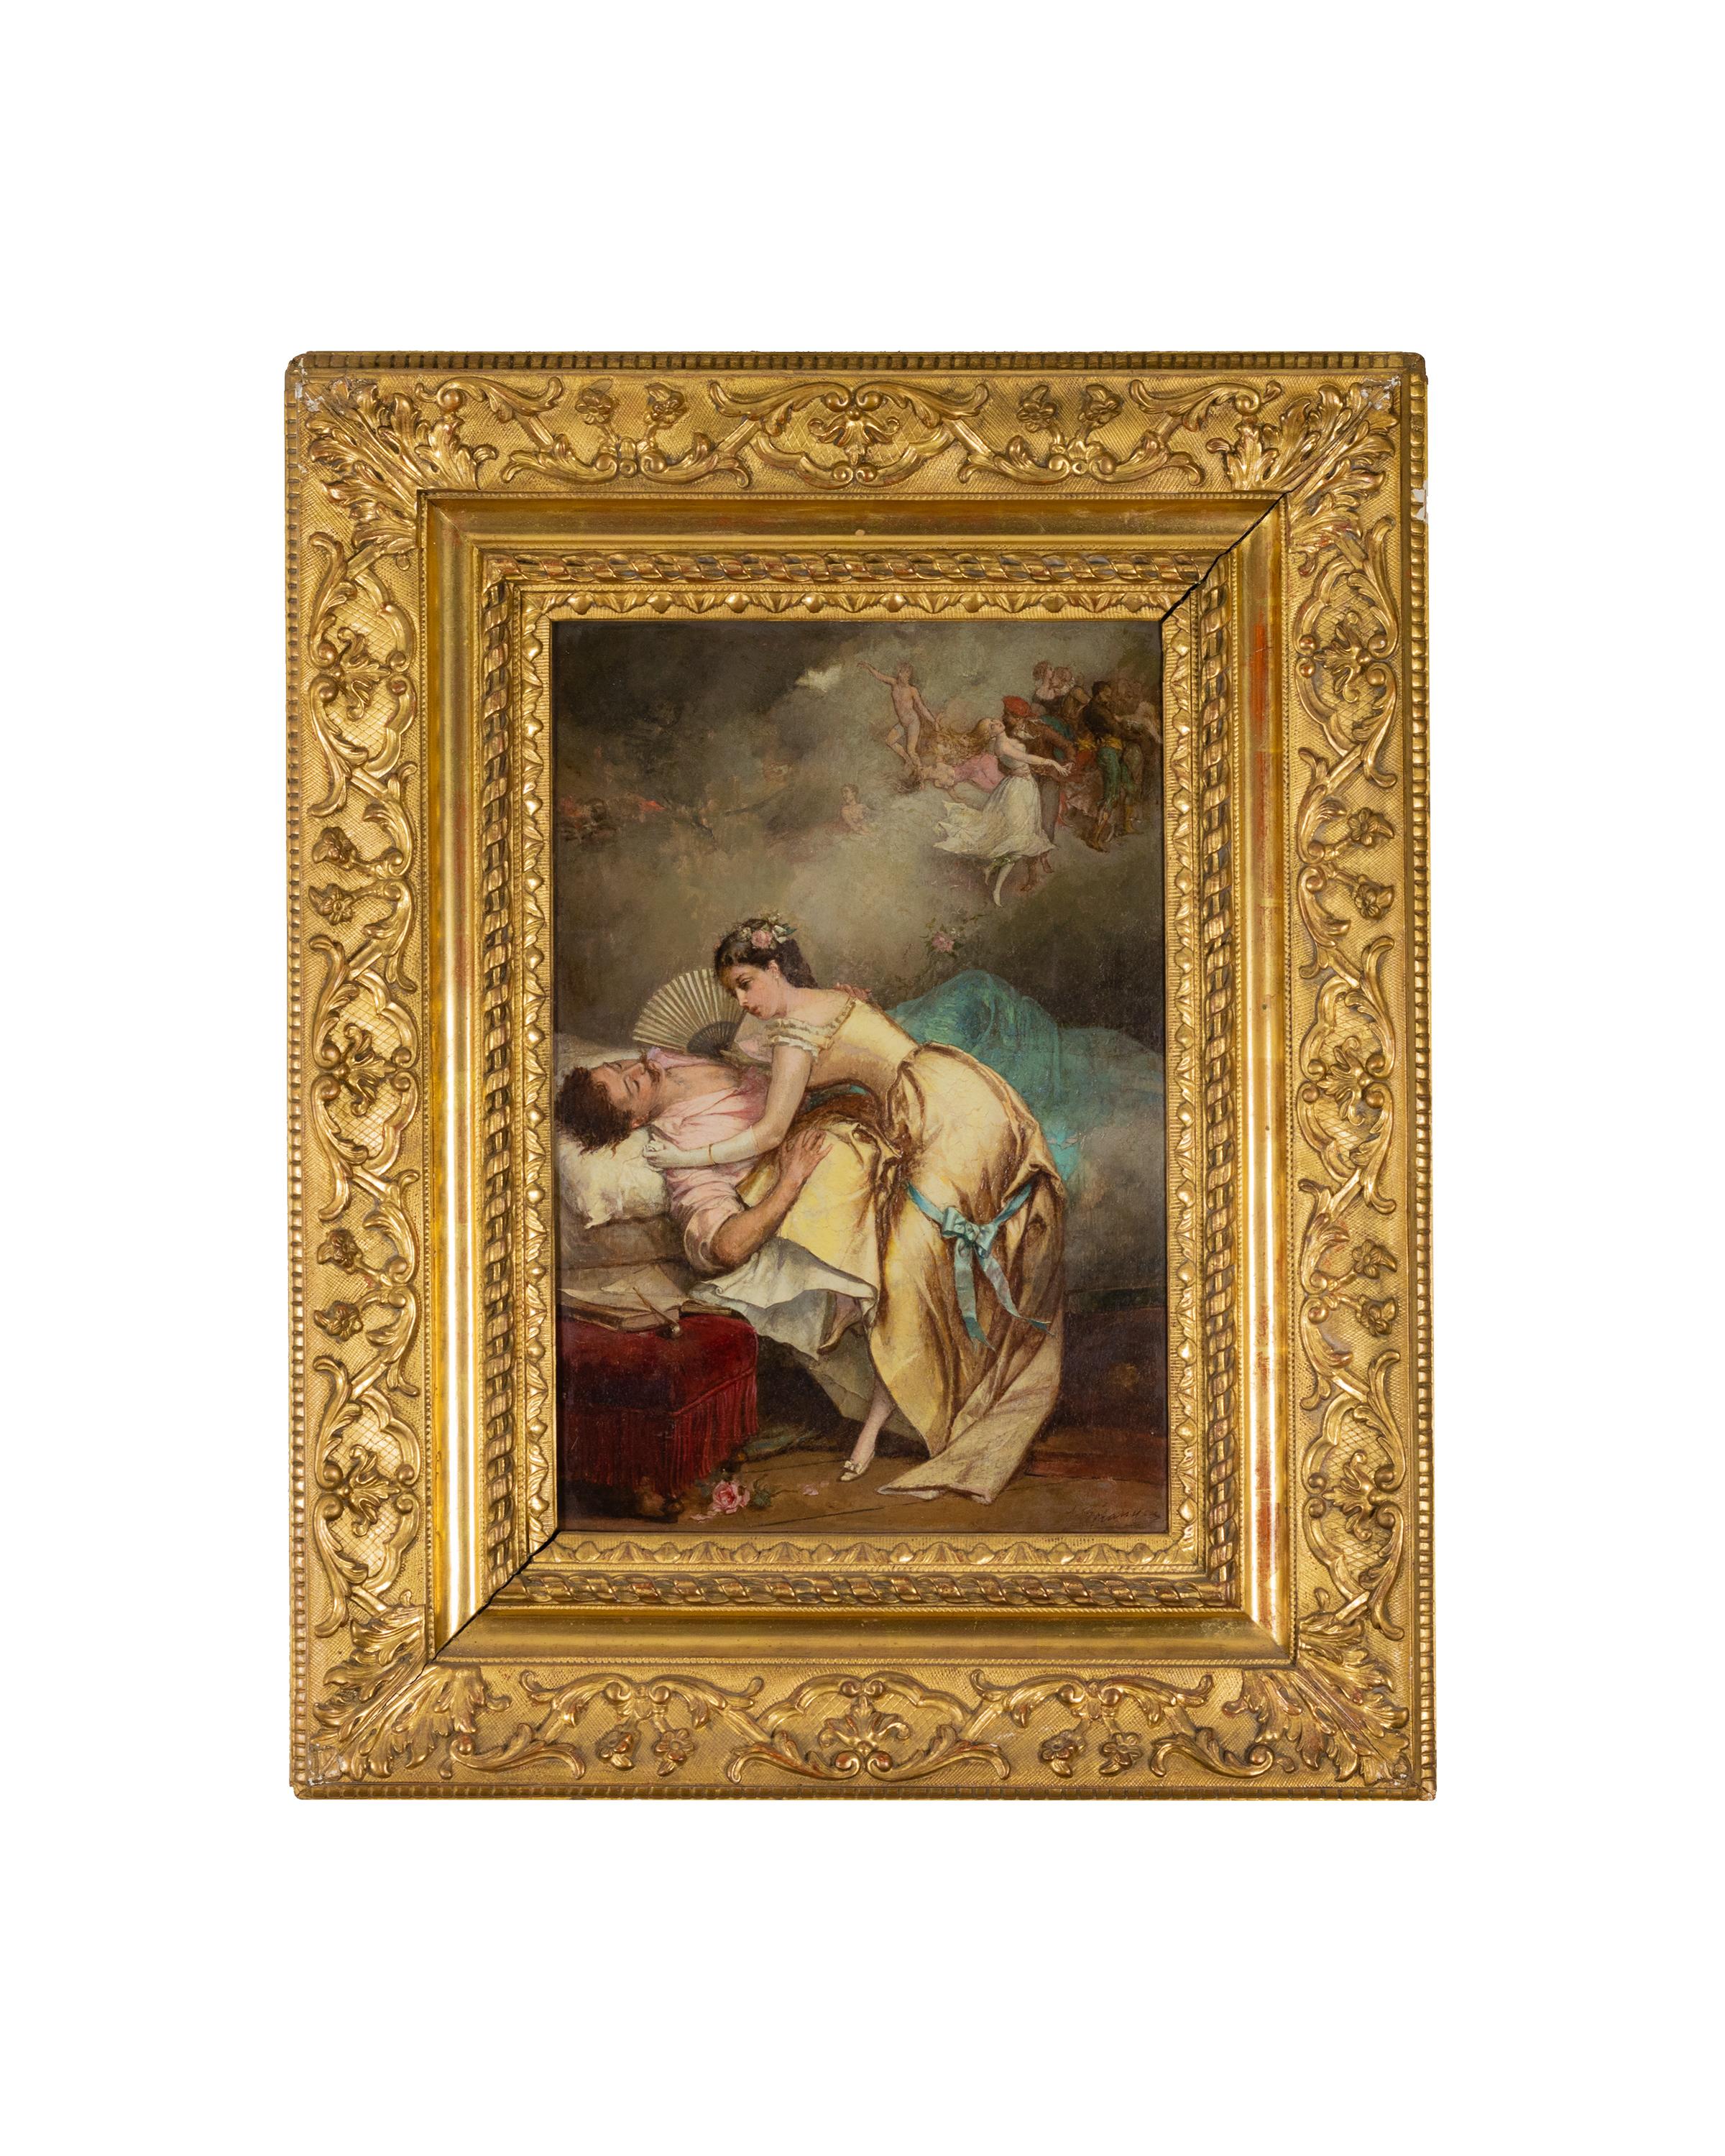 Cuadro del siglo XIX de una pareja de enamorados / escena galante de inspiración grecorromana de la Escuela de Antoine Watteau Watteau por Jean Baptiste Emile Beranger.

Firma 